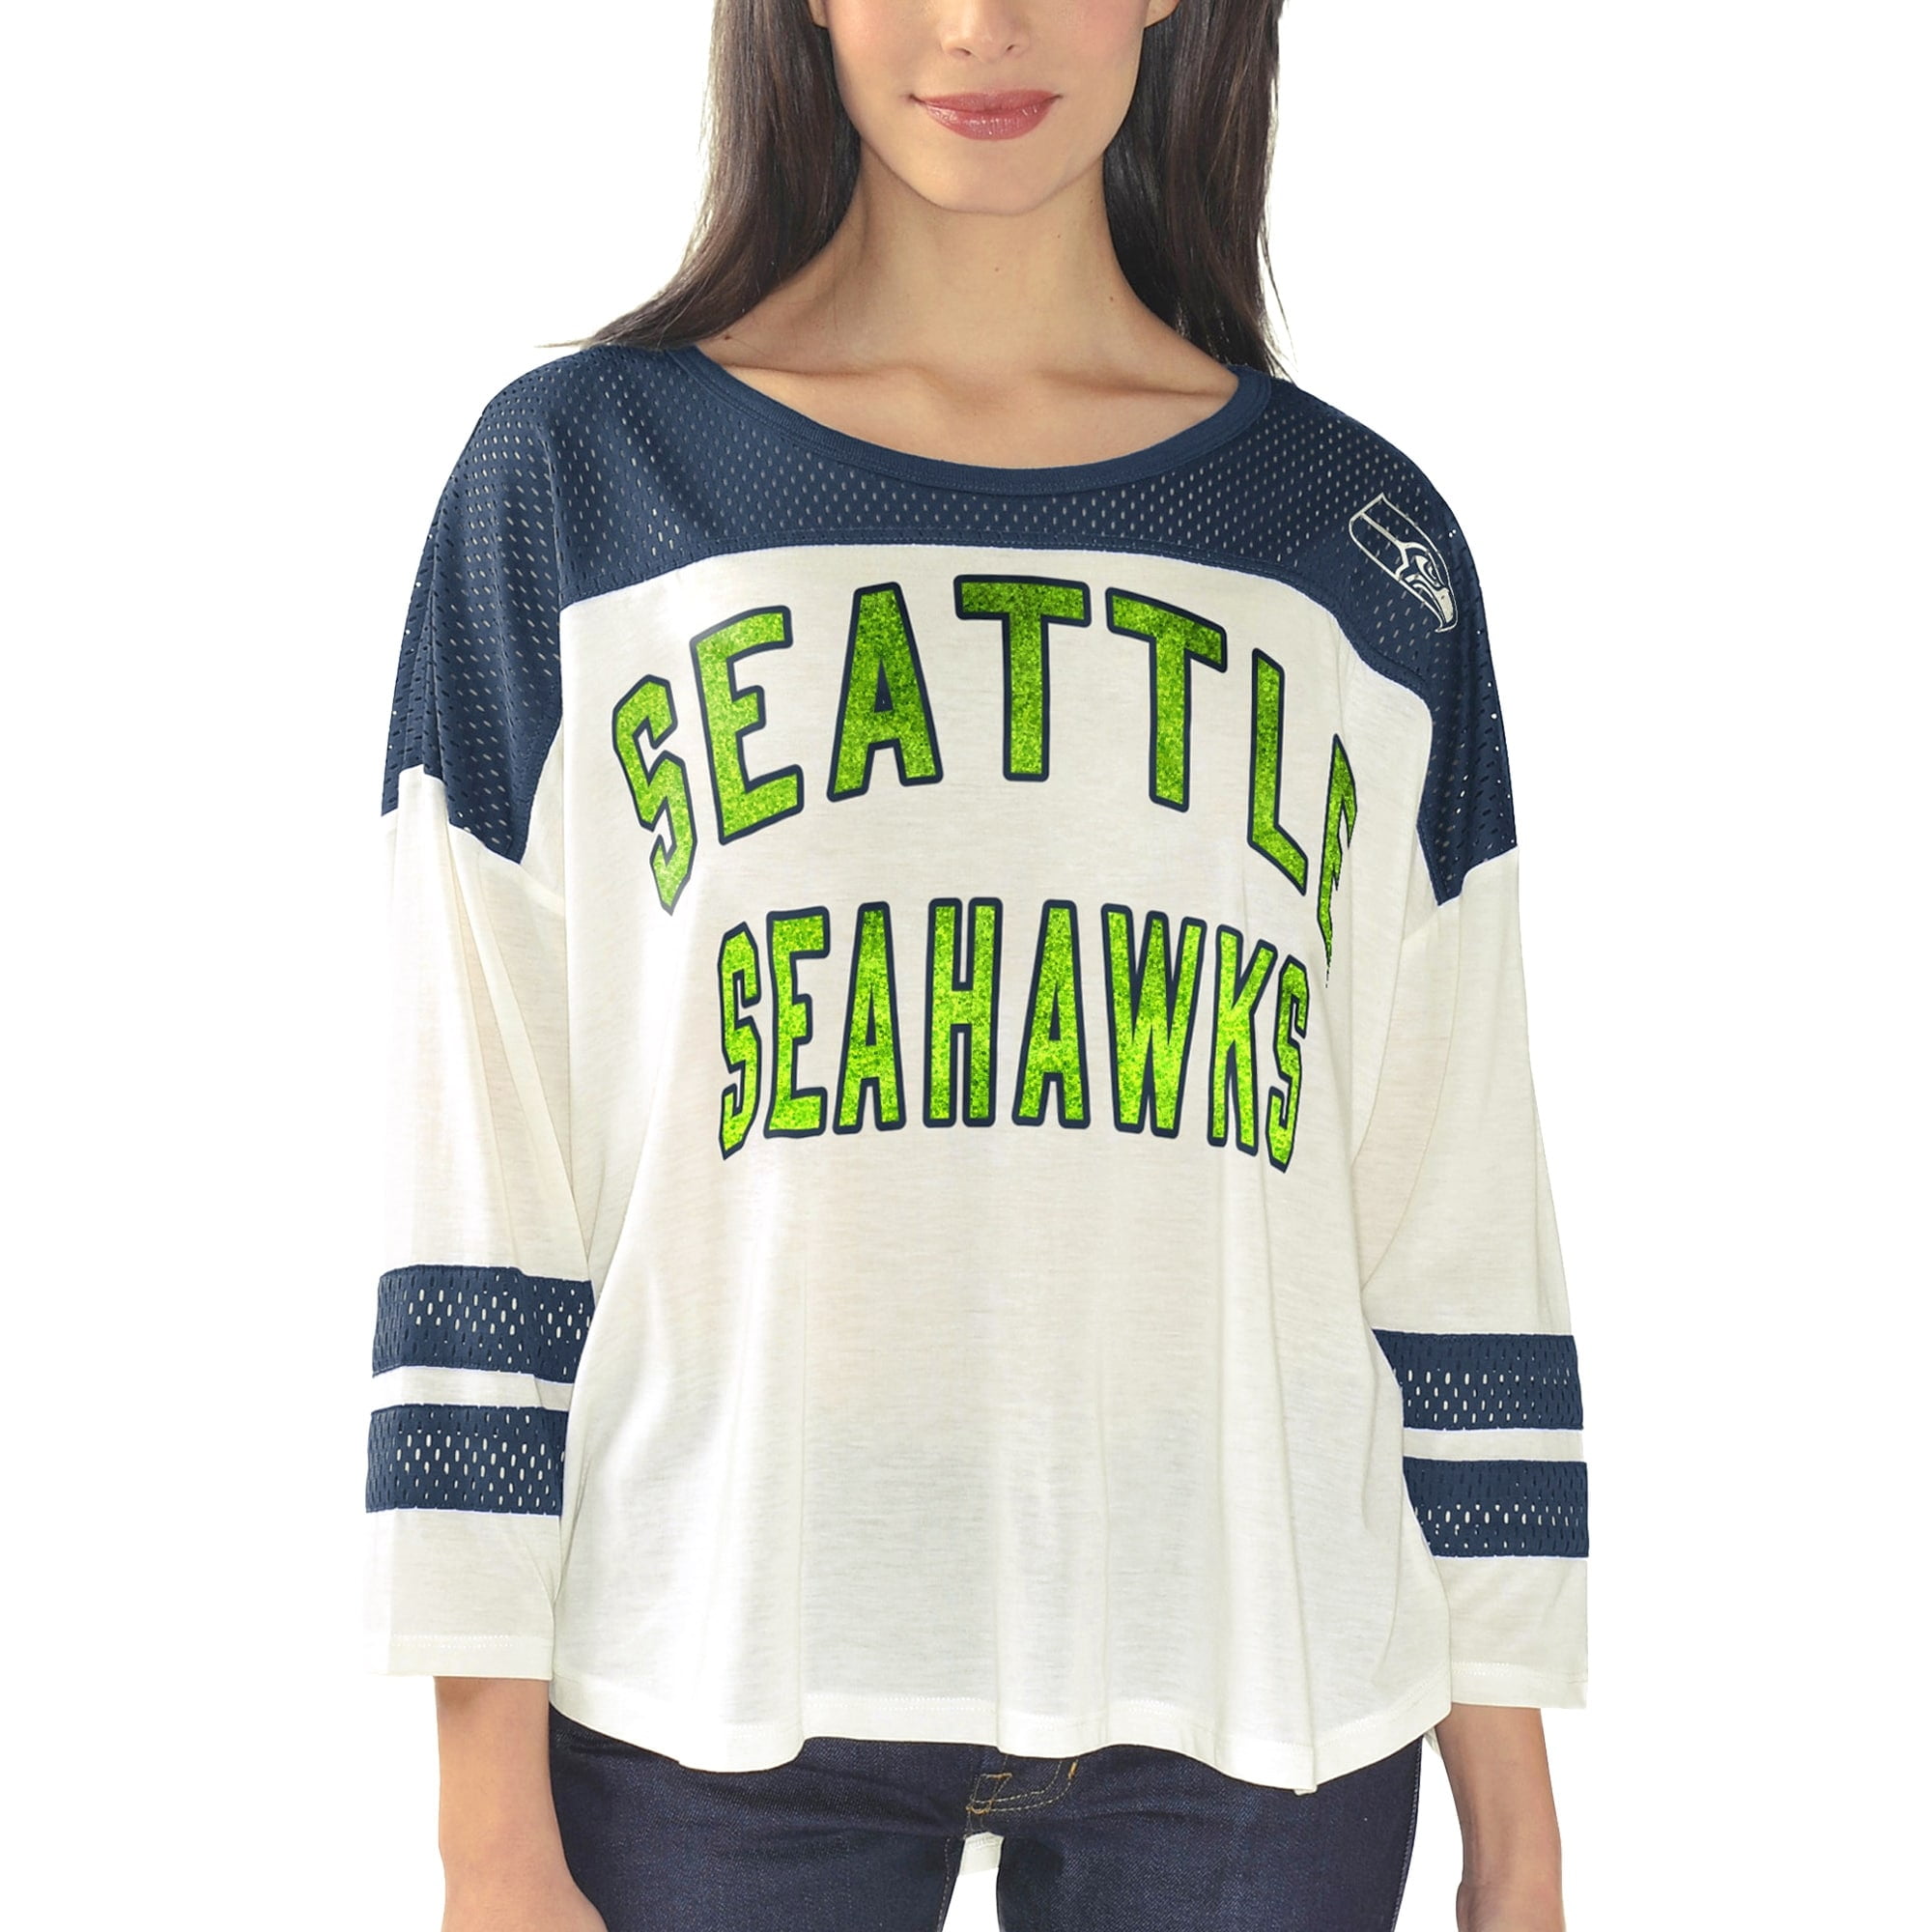 vintage seahawks womens shirt